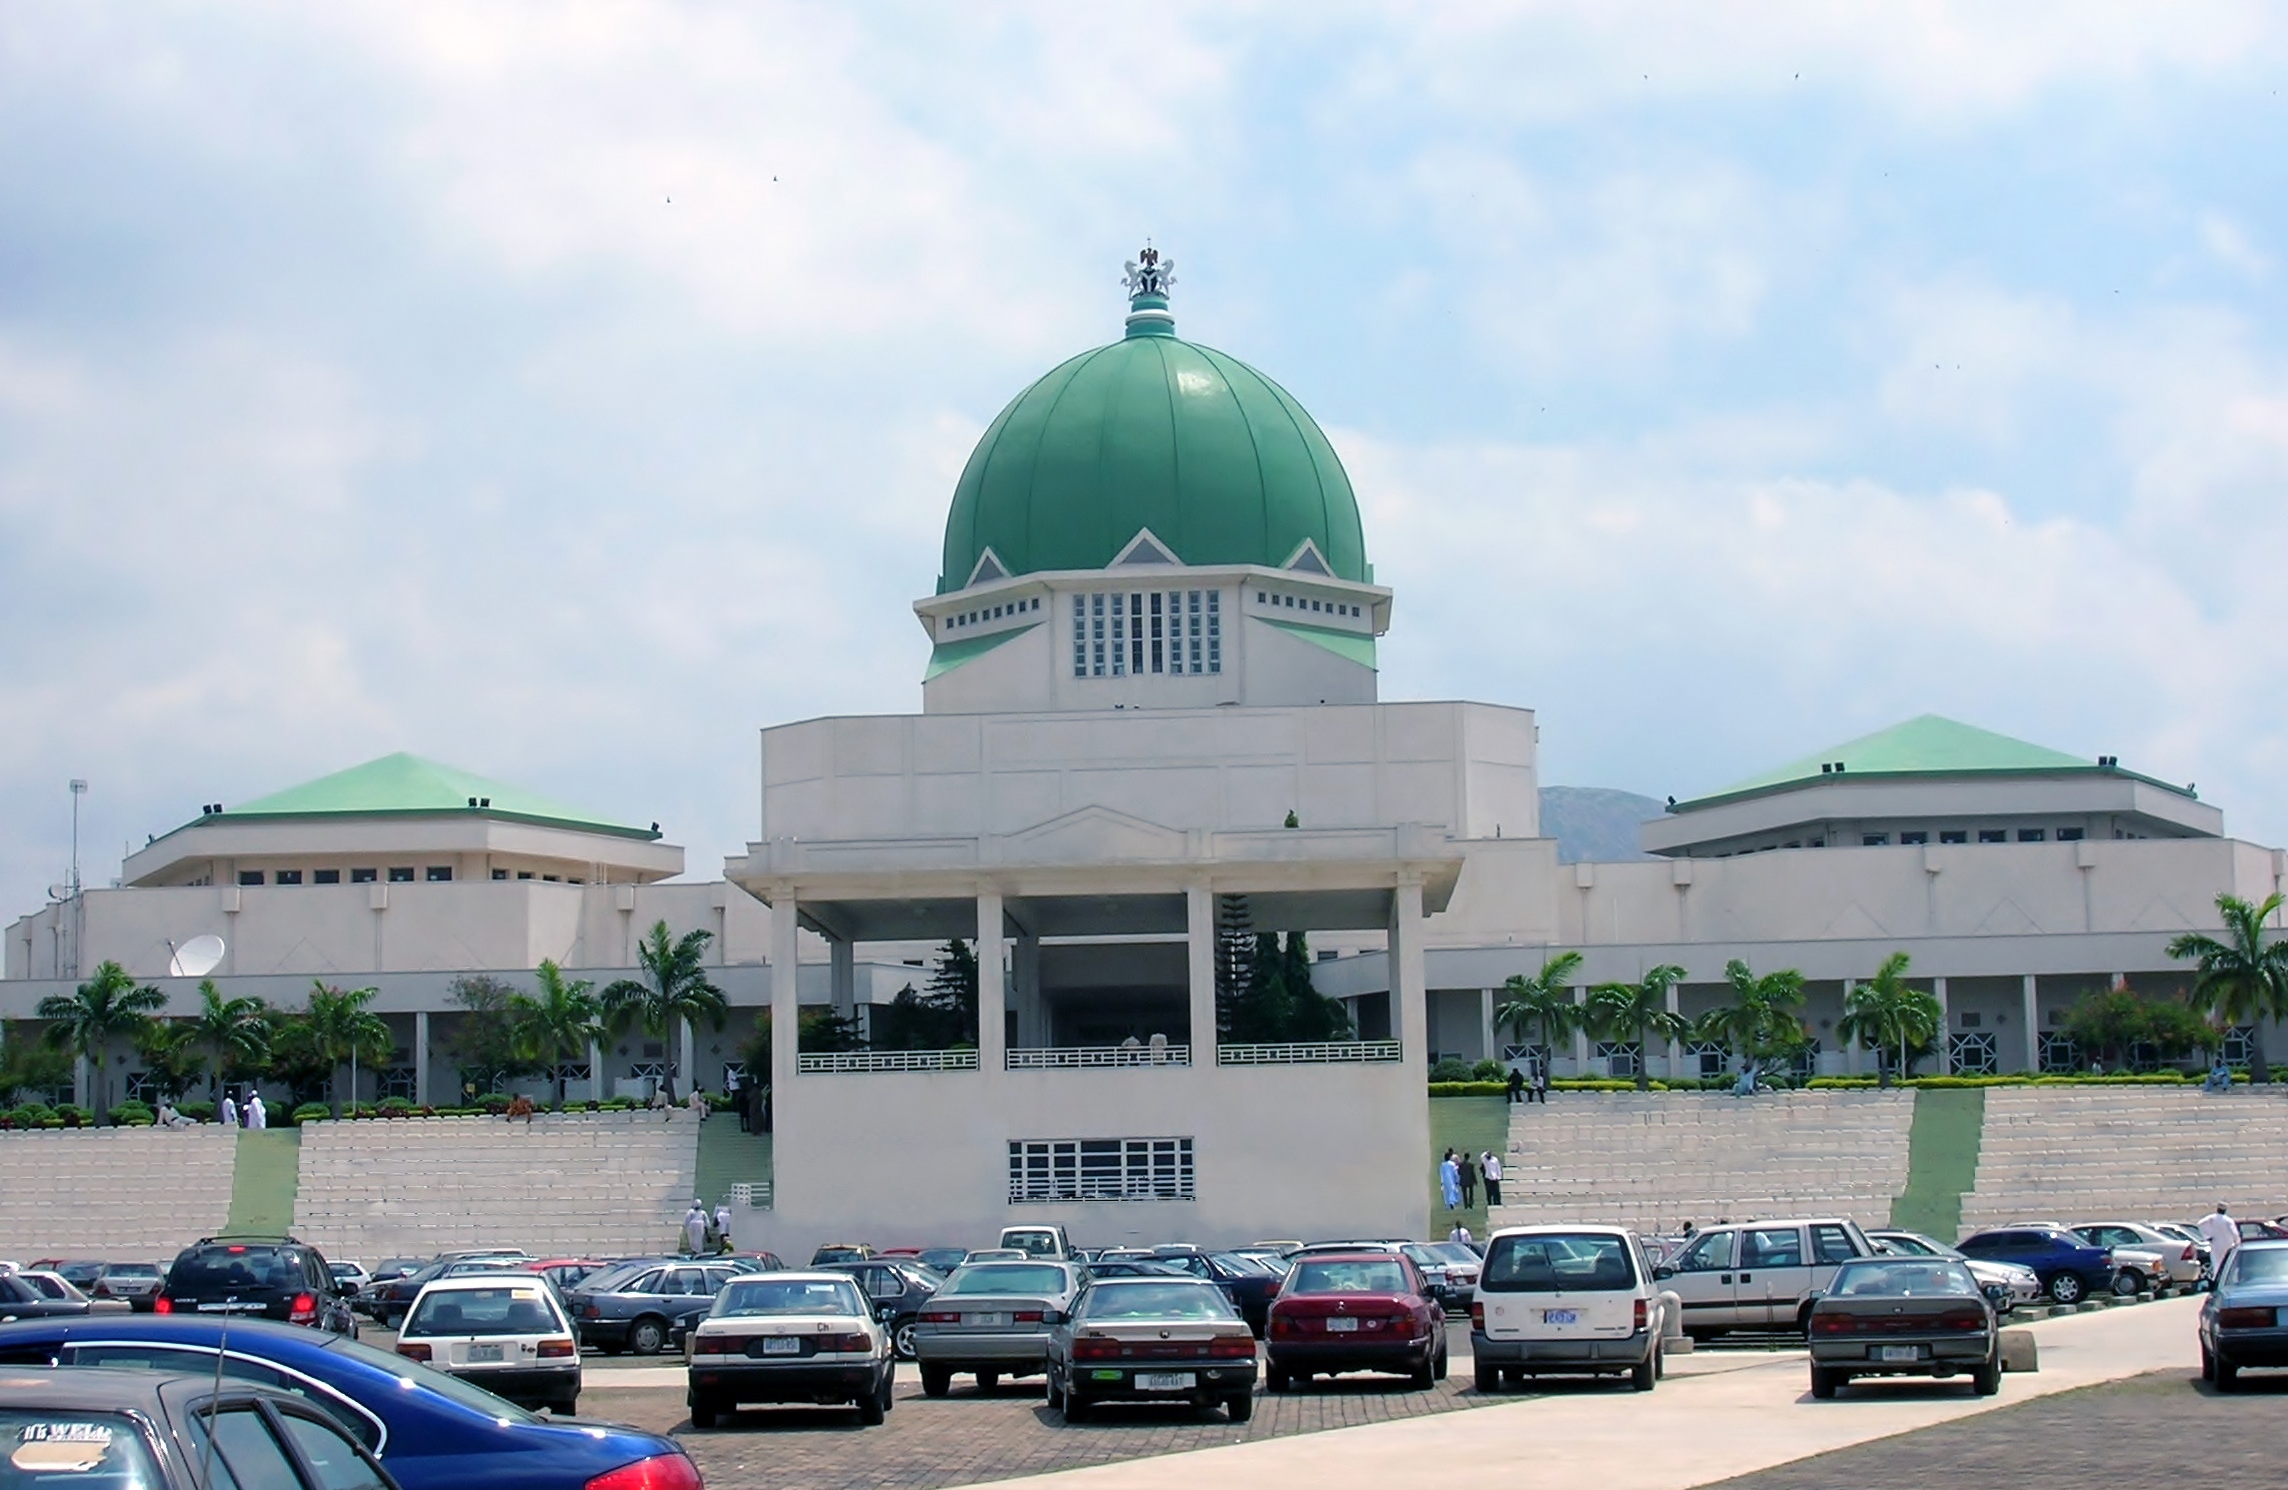 Parliament of Nigeria